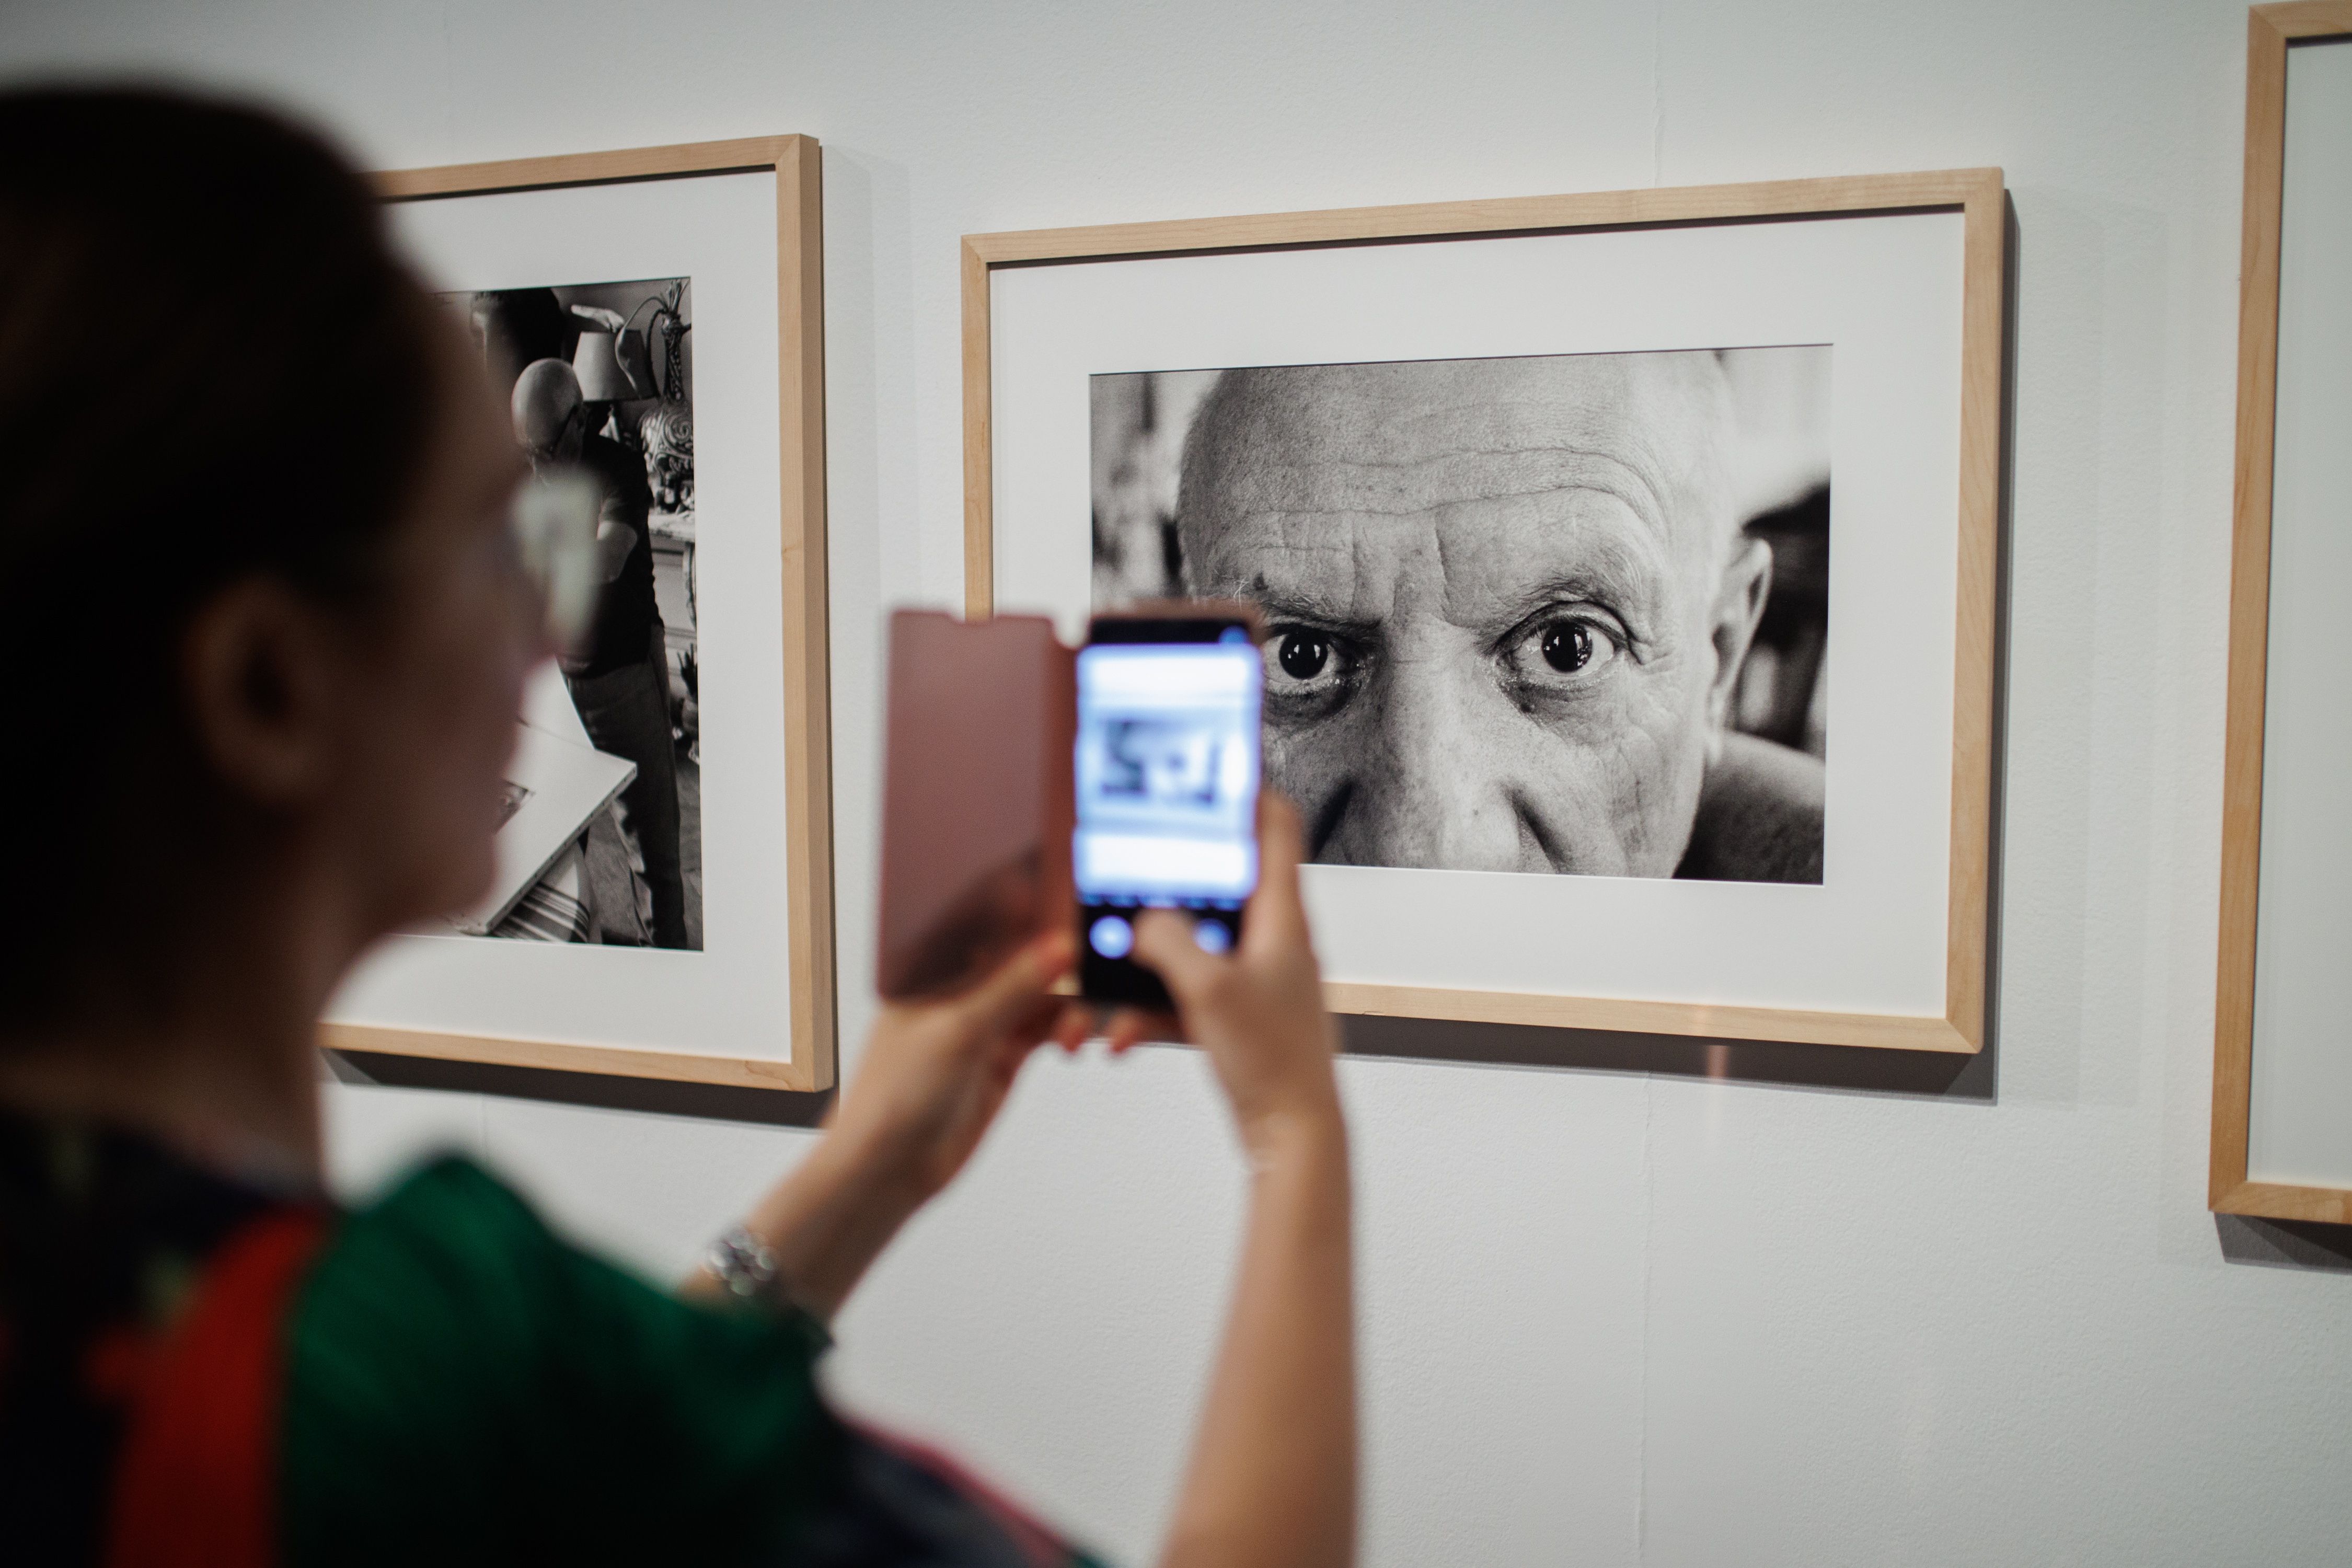 La vida y el trabajo de Picasso llegan al Fernán Gómez en forma de exposición fotográfica